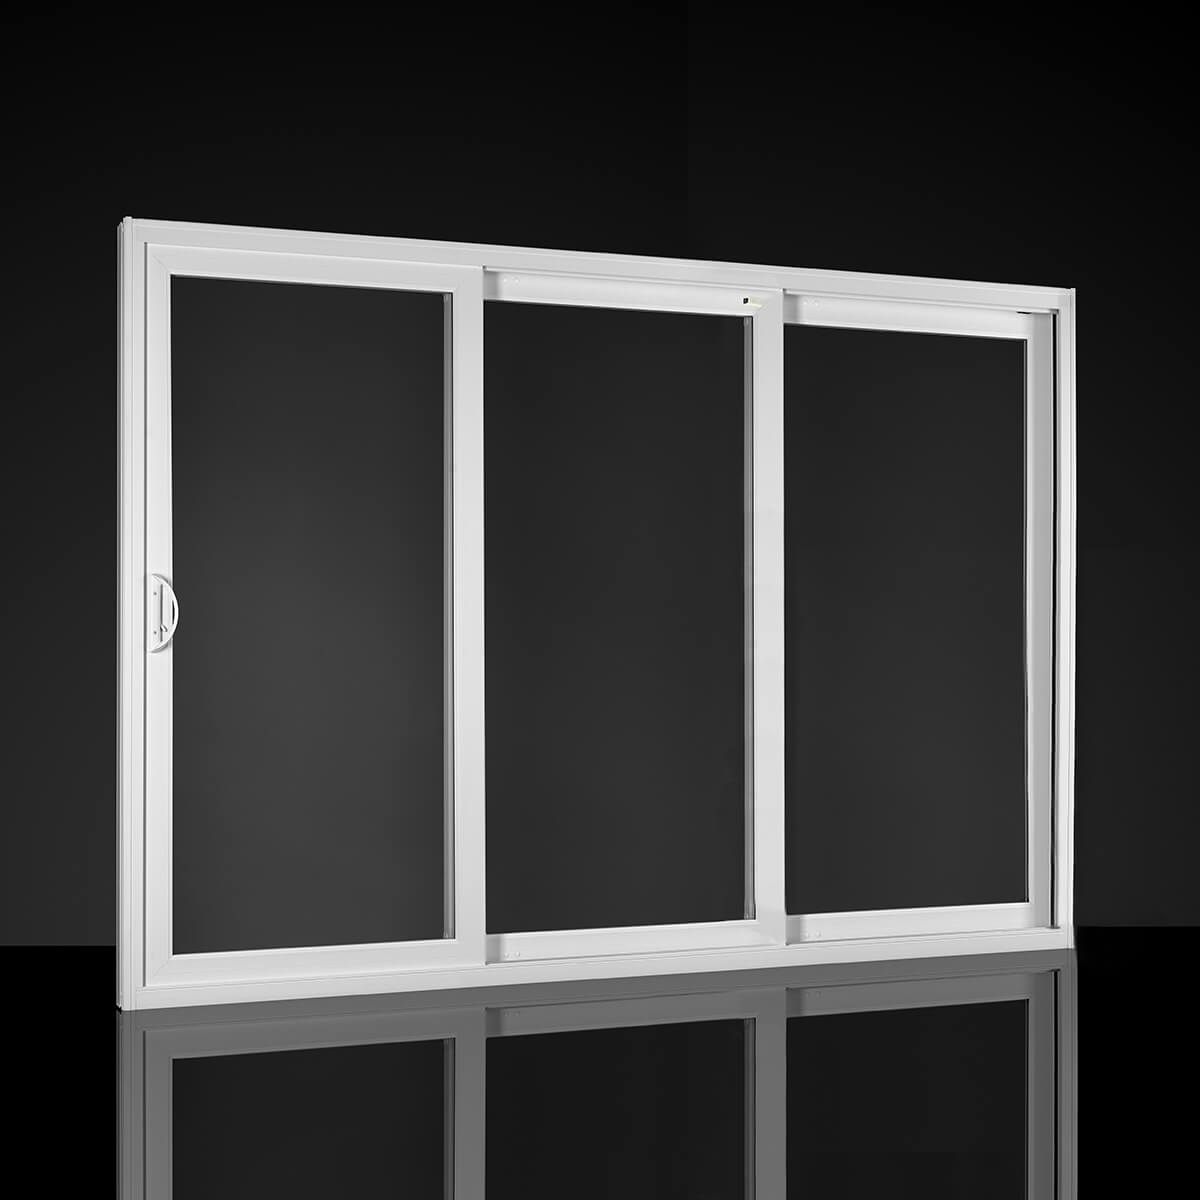 MI panel door display